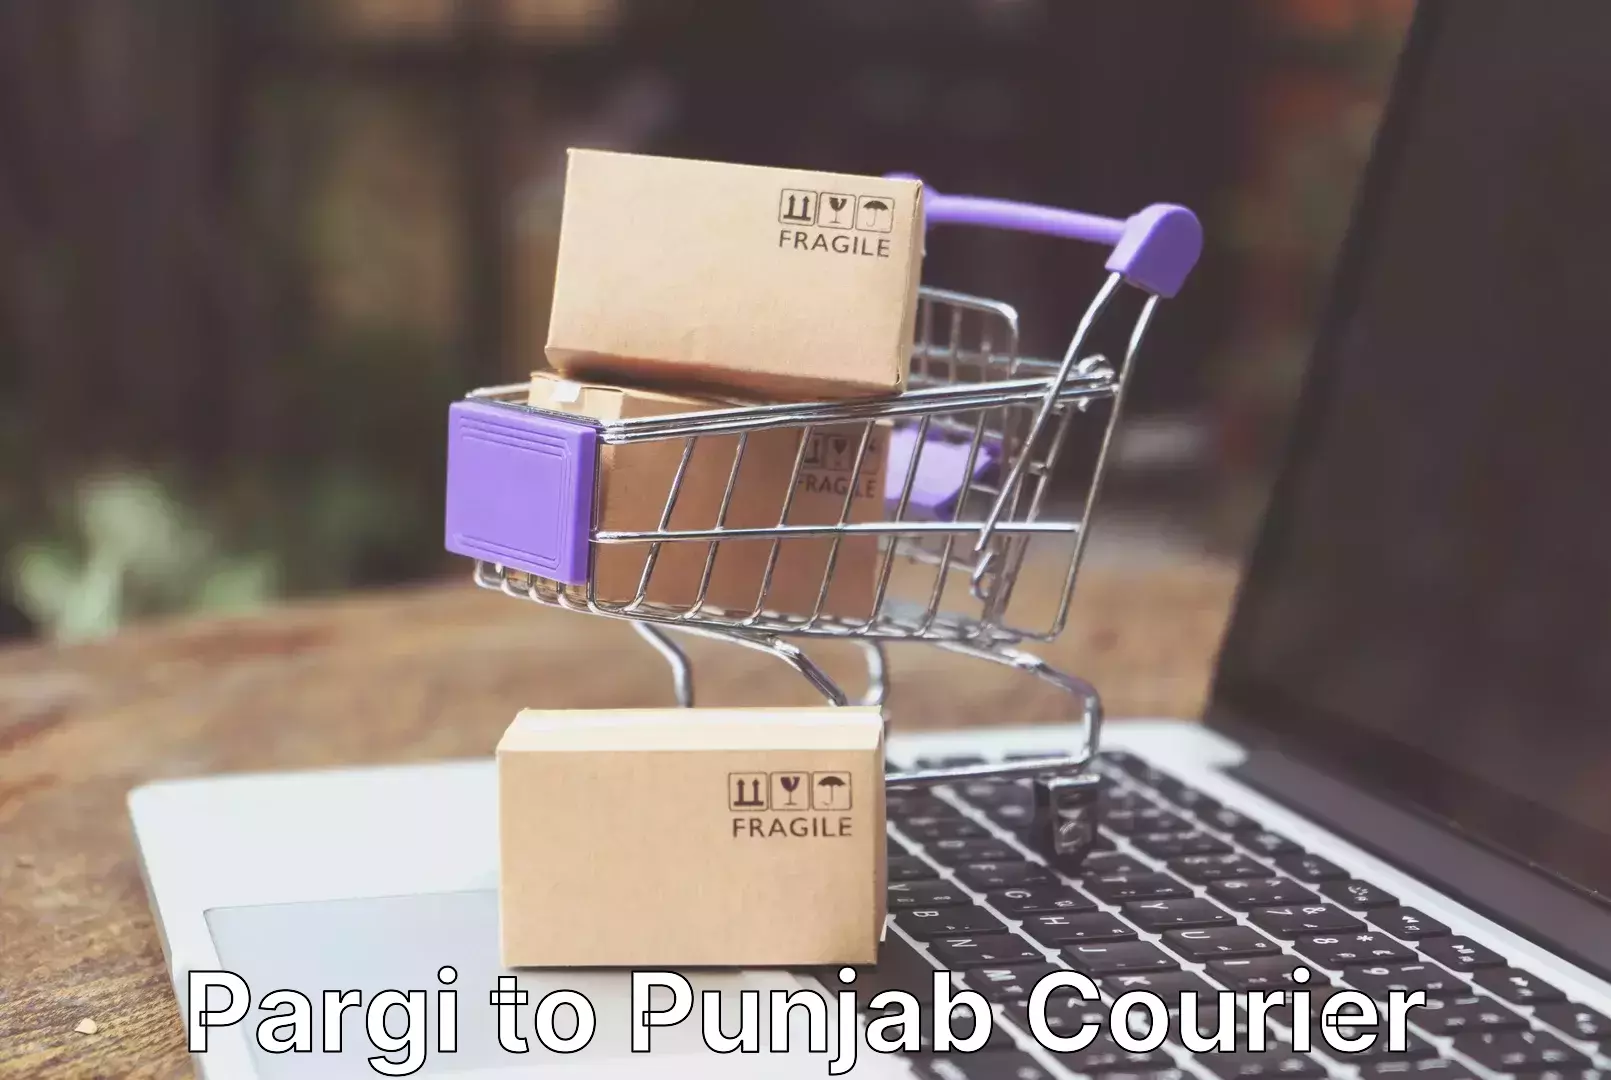 Professional packing and transport Pargi to Punjab